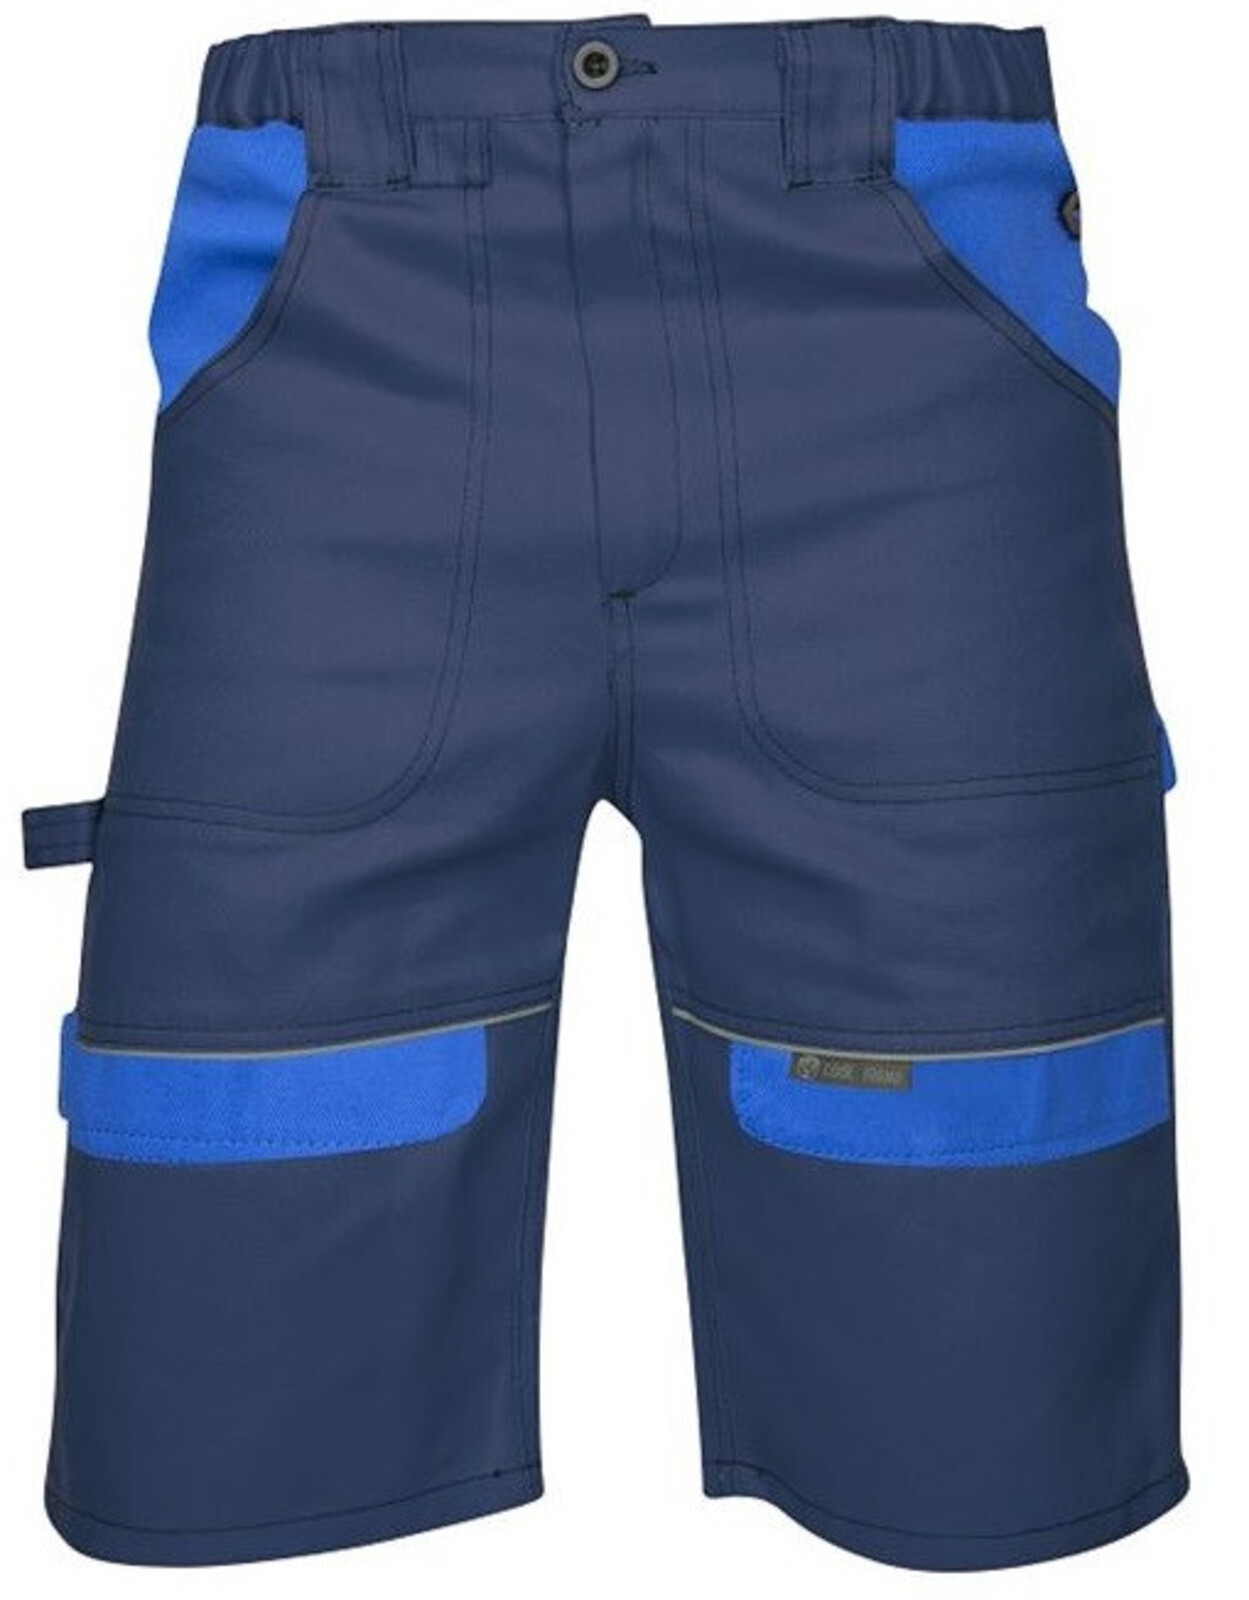 Pánske montérkové šortky Ardon Cool Trend - veľkosť: 52, farba: tmavomodrá/svetlomodrá